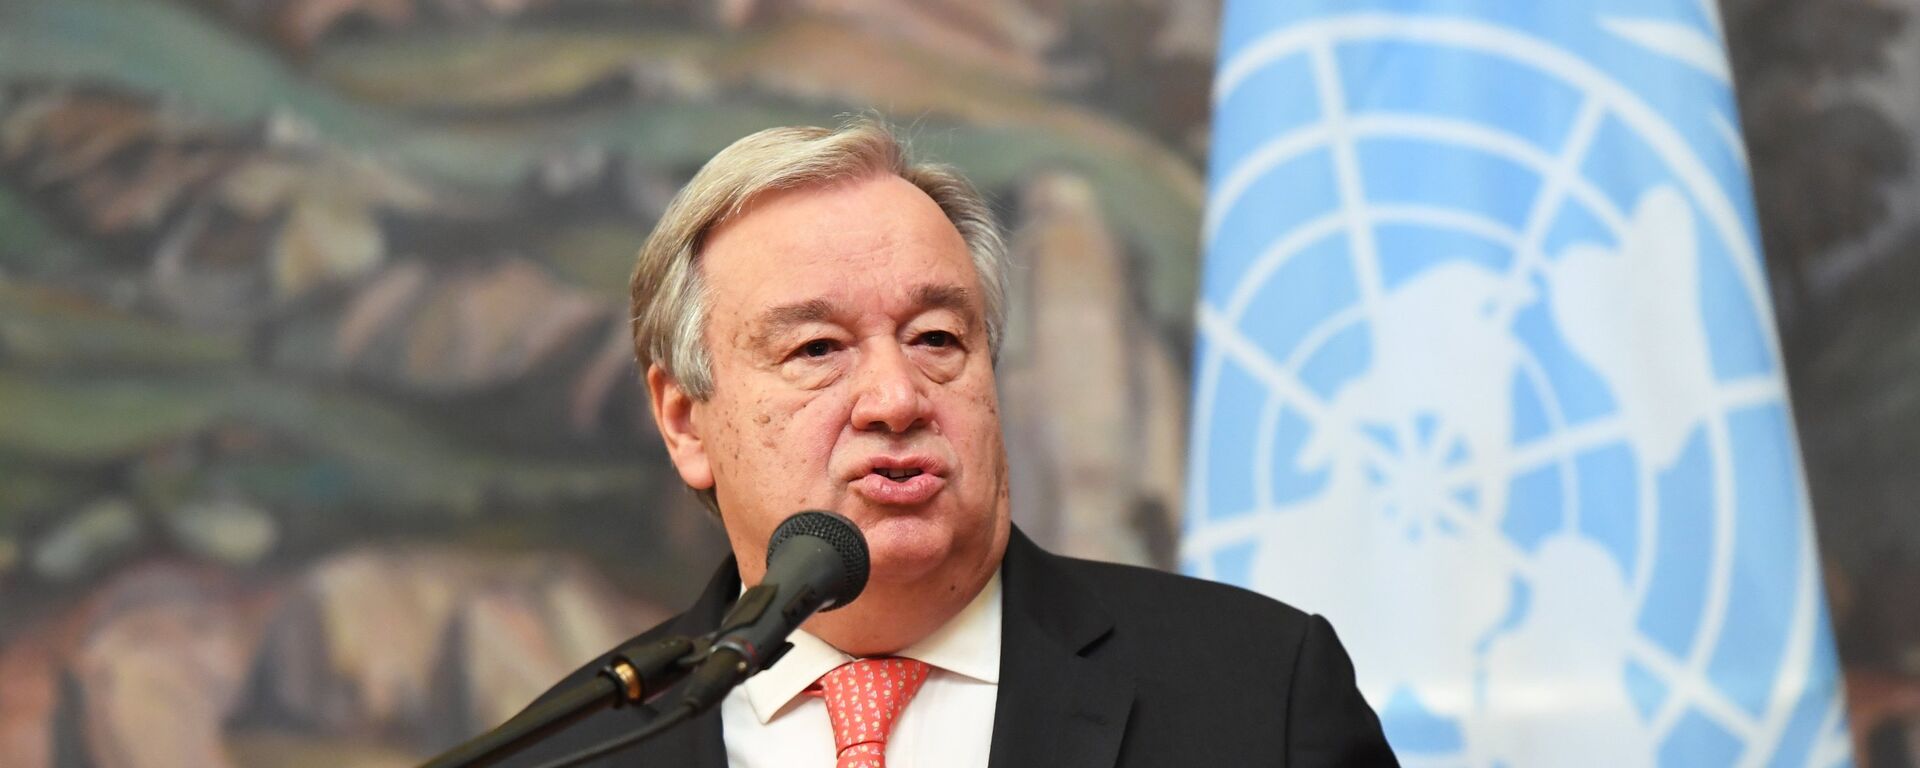 Antonio Guterres, secretario general de la ONU - Sputnik Mundo, 1920, 01.07.2020